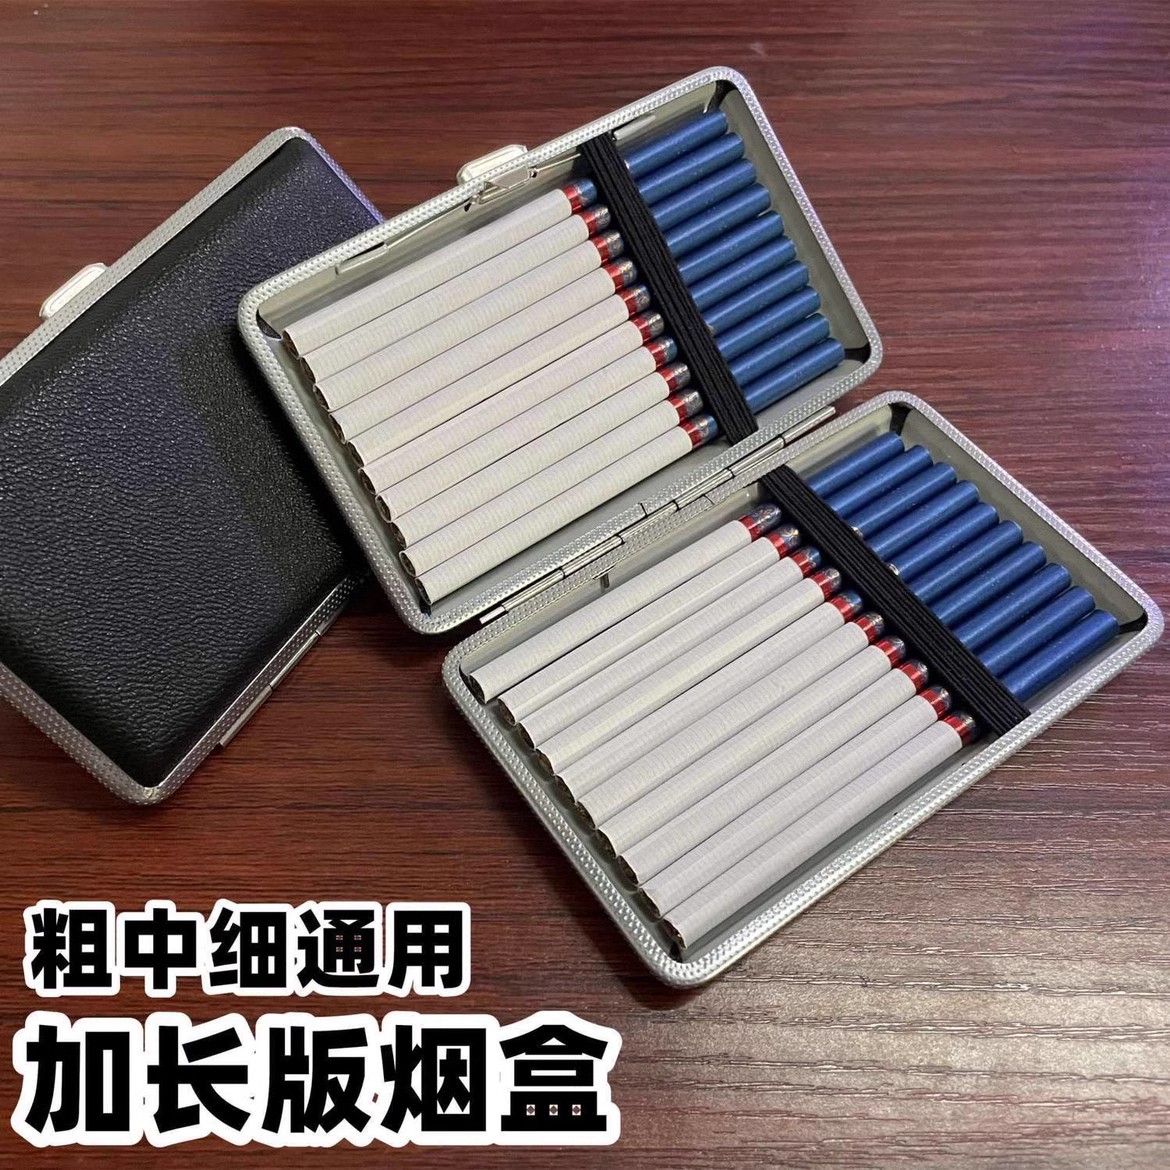 细款5.5mm盒子超薄抗压烟盒细支专用20支装香烟盒高档皮质烟夹盒